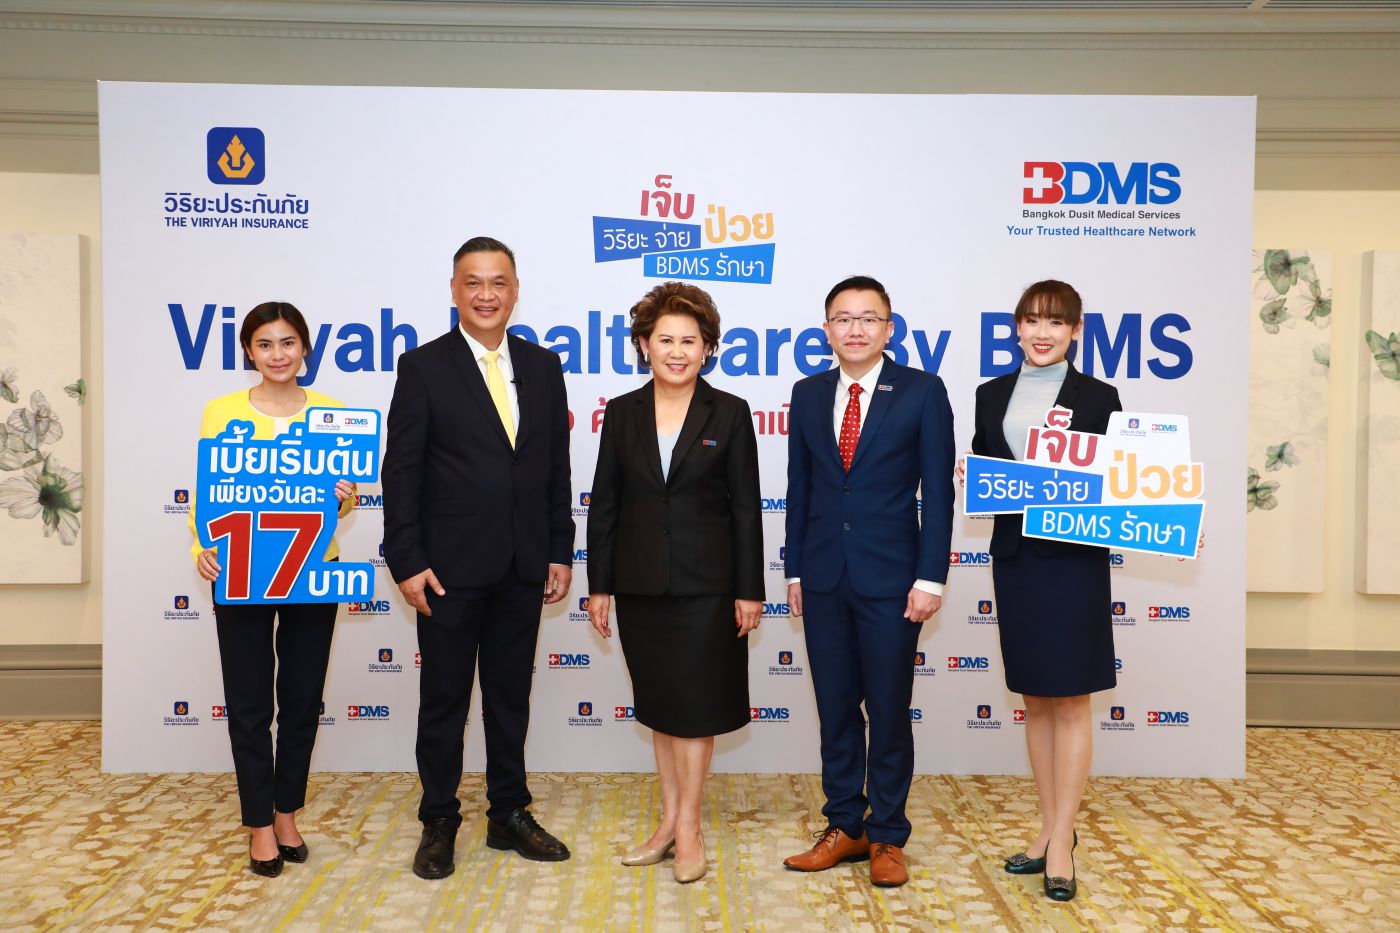 วิริยะ-BDMS ร่วมยกคุณภาพชีวิตคนไทย     ตั้งเป้าหมายให้ทุกคนมีประกันภัยสุขภาพ  ด้วยเบี้ยราคาพิเศษเริ่มต้นวันละ17 บาท